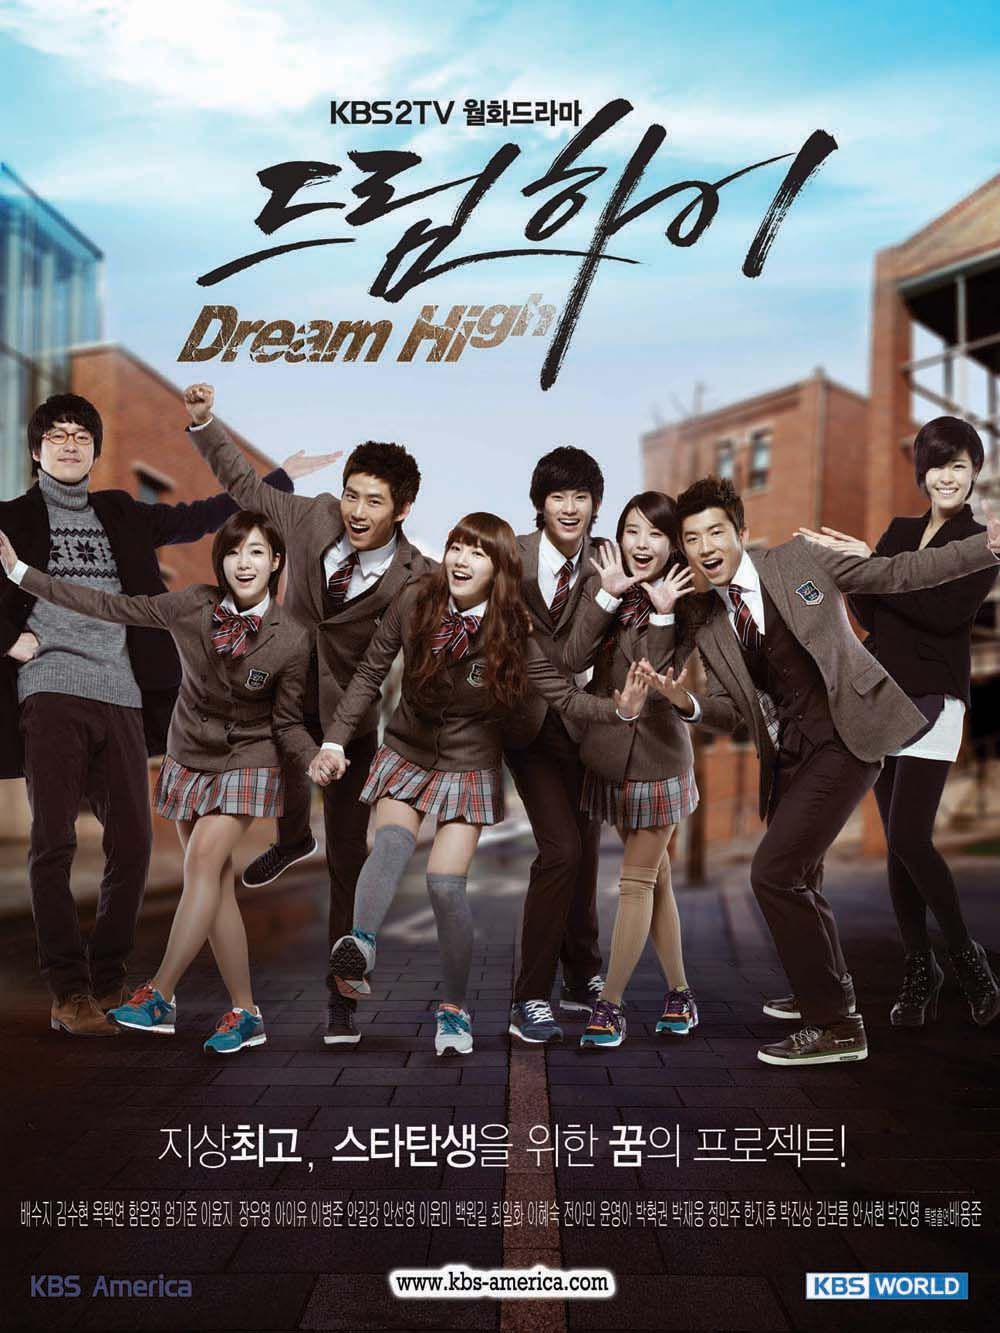 ดูหนังออนไลน์ฟรี Dream High Season1 มุ่งสู่ดาว ก้าวตามฝัน ซับไทย (จบ)